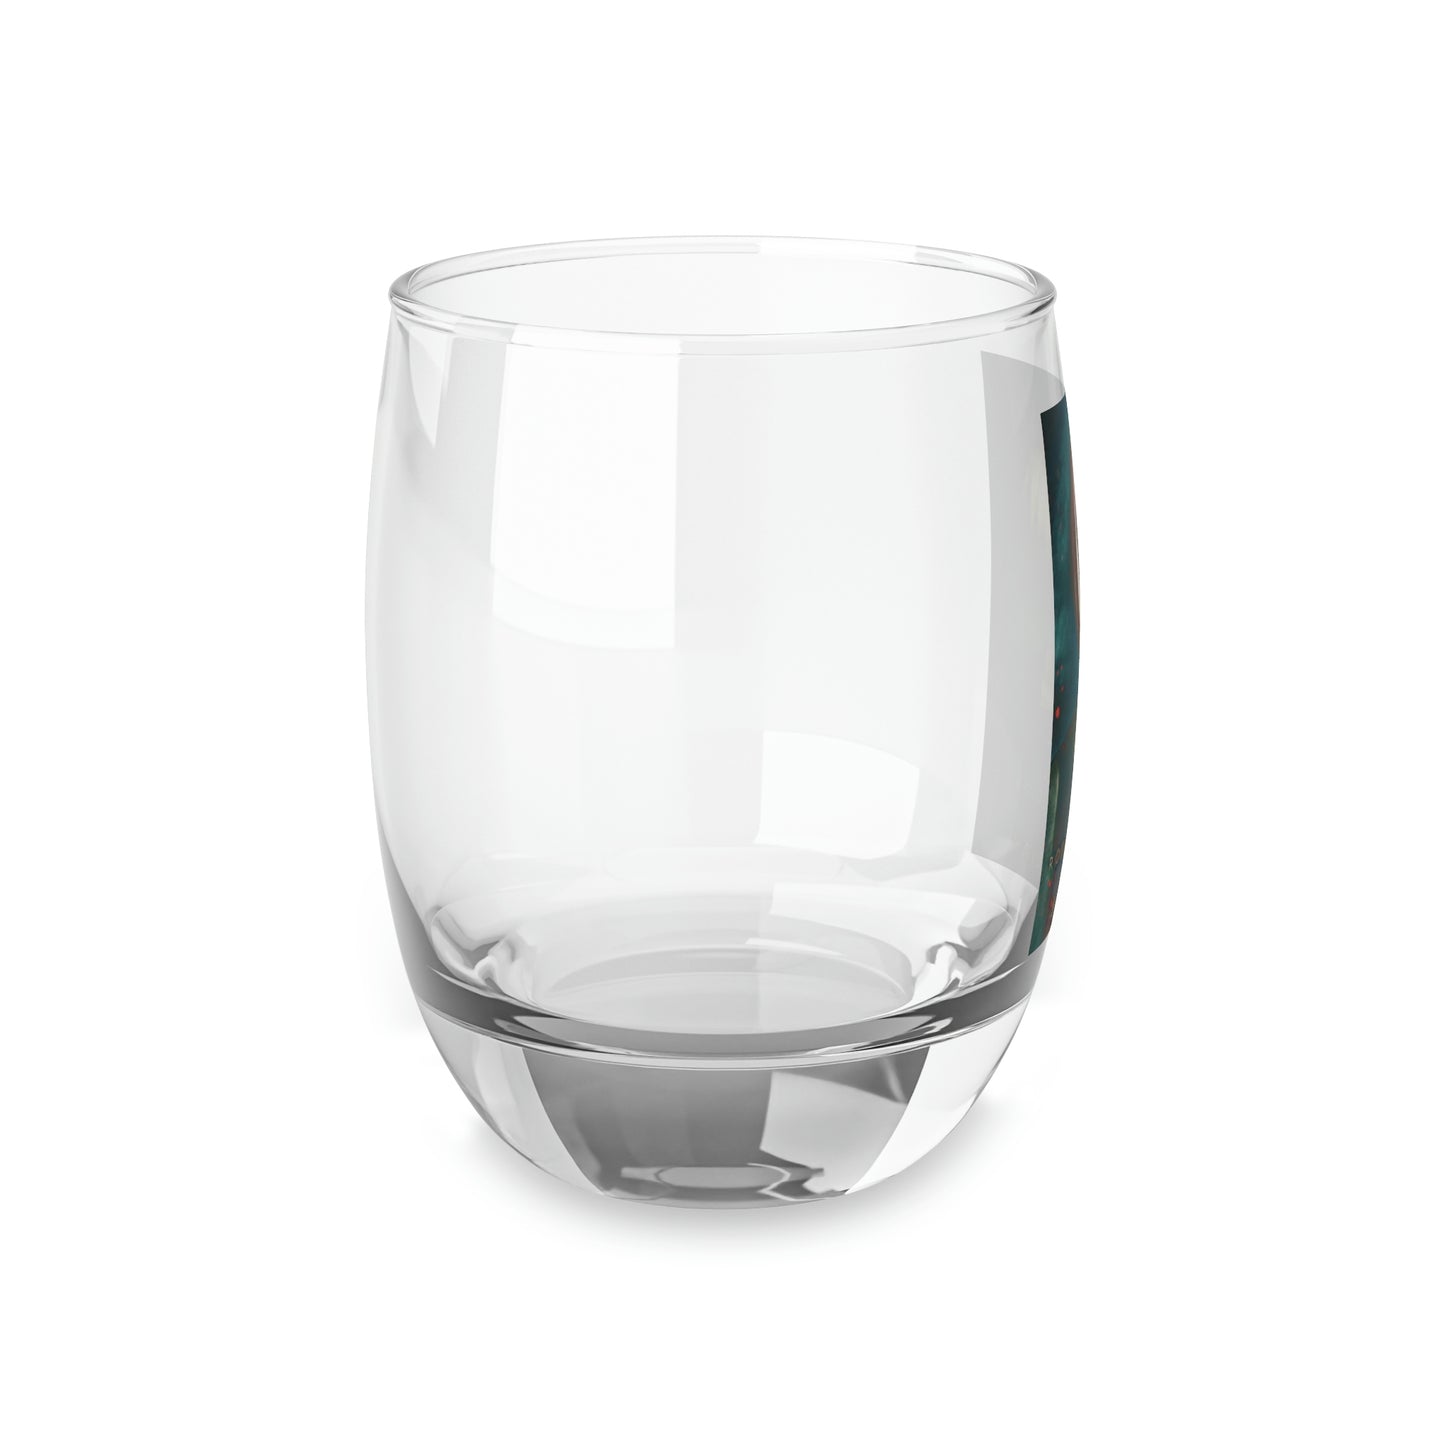 Kane - Whiskey Glass